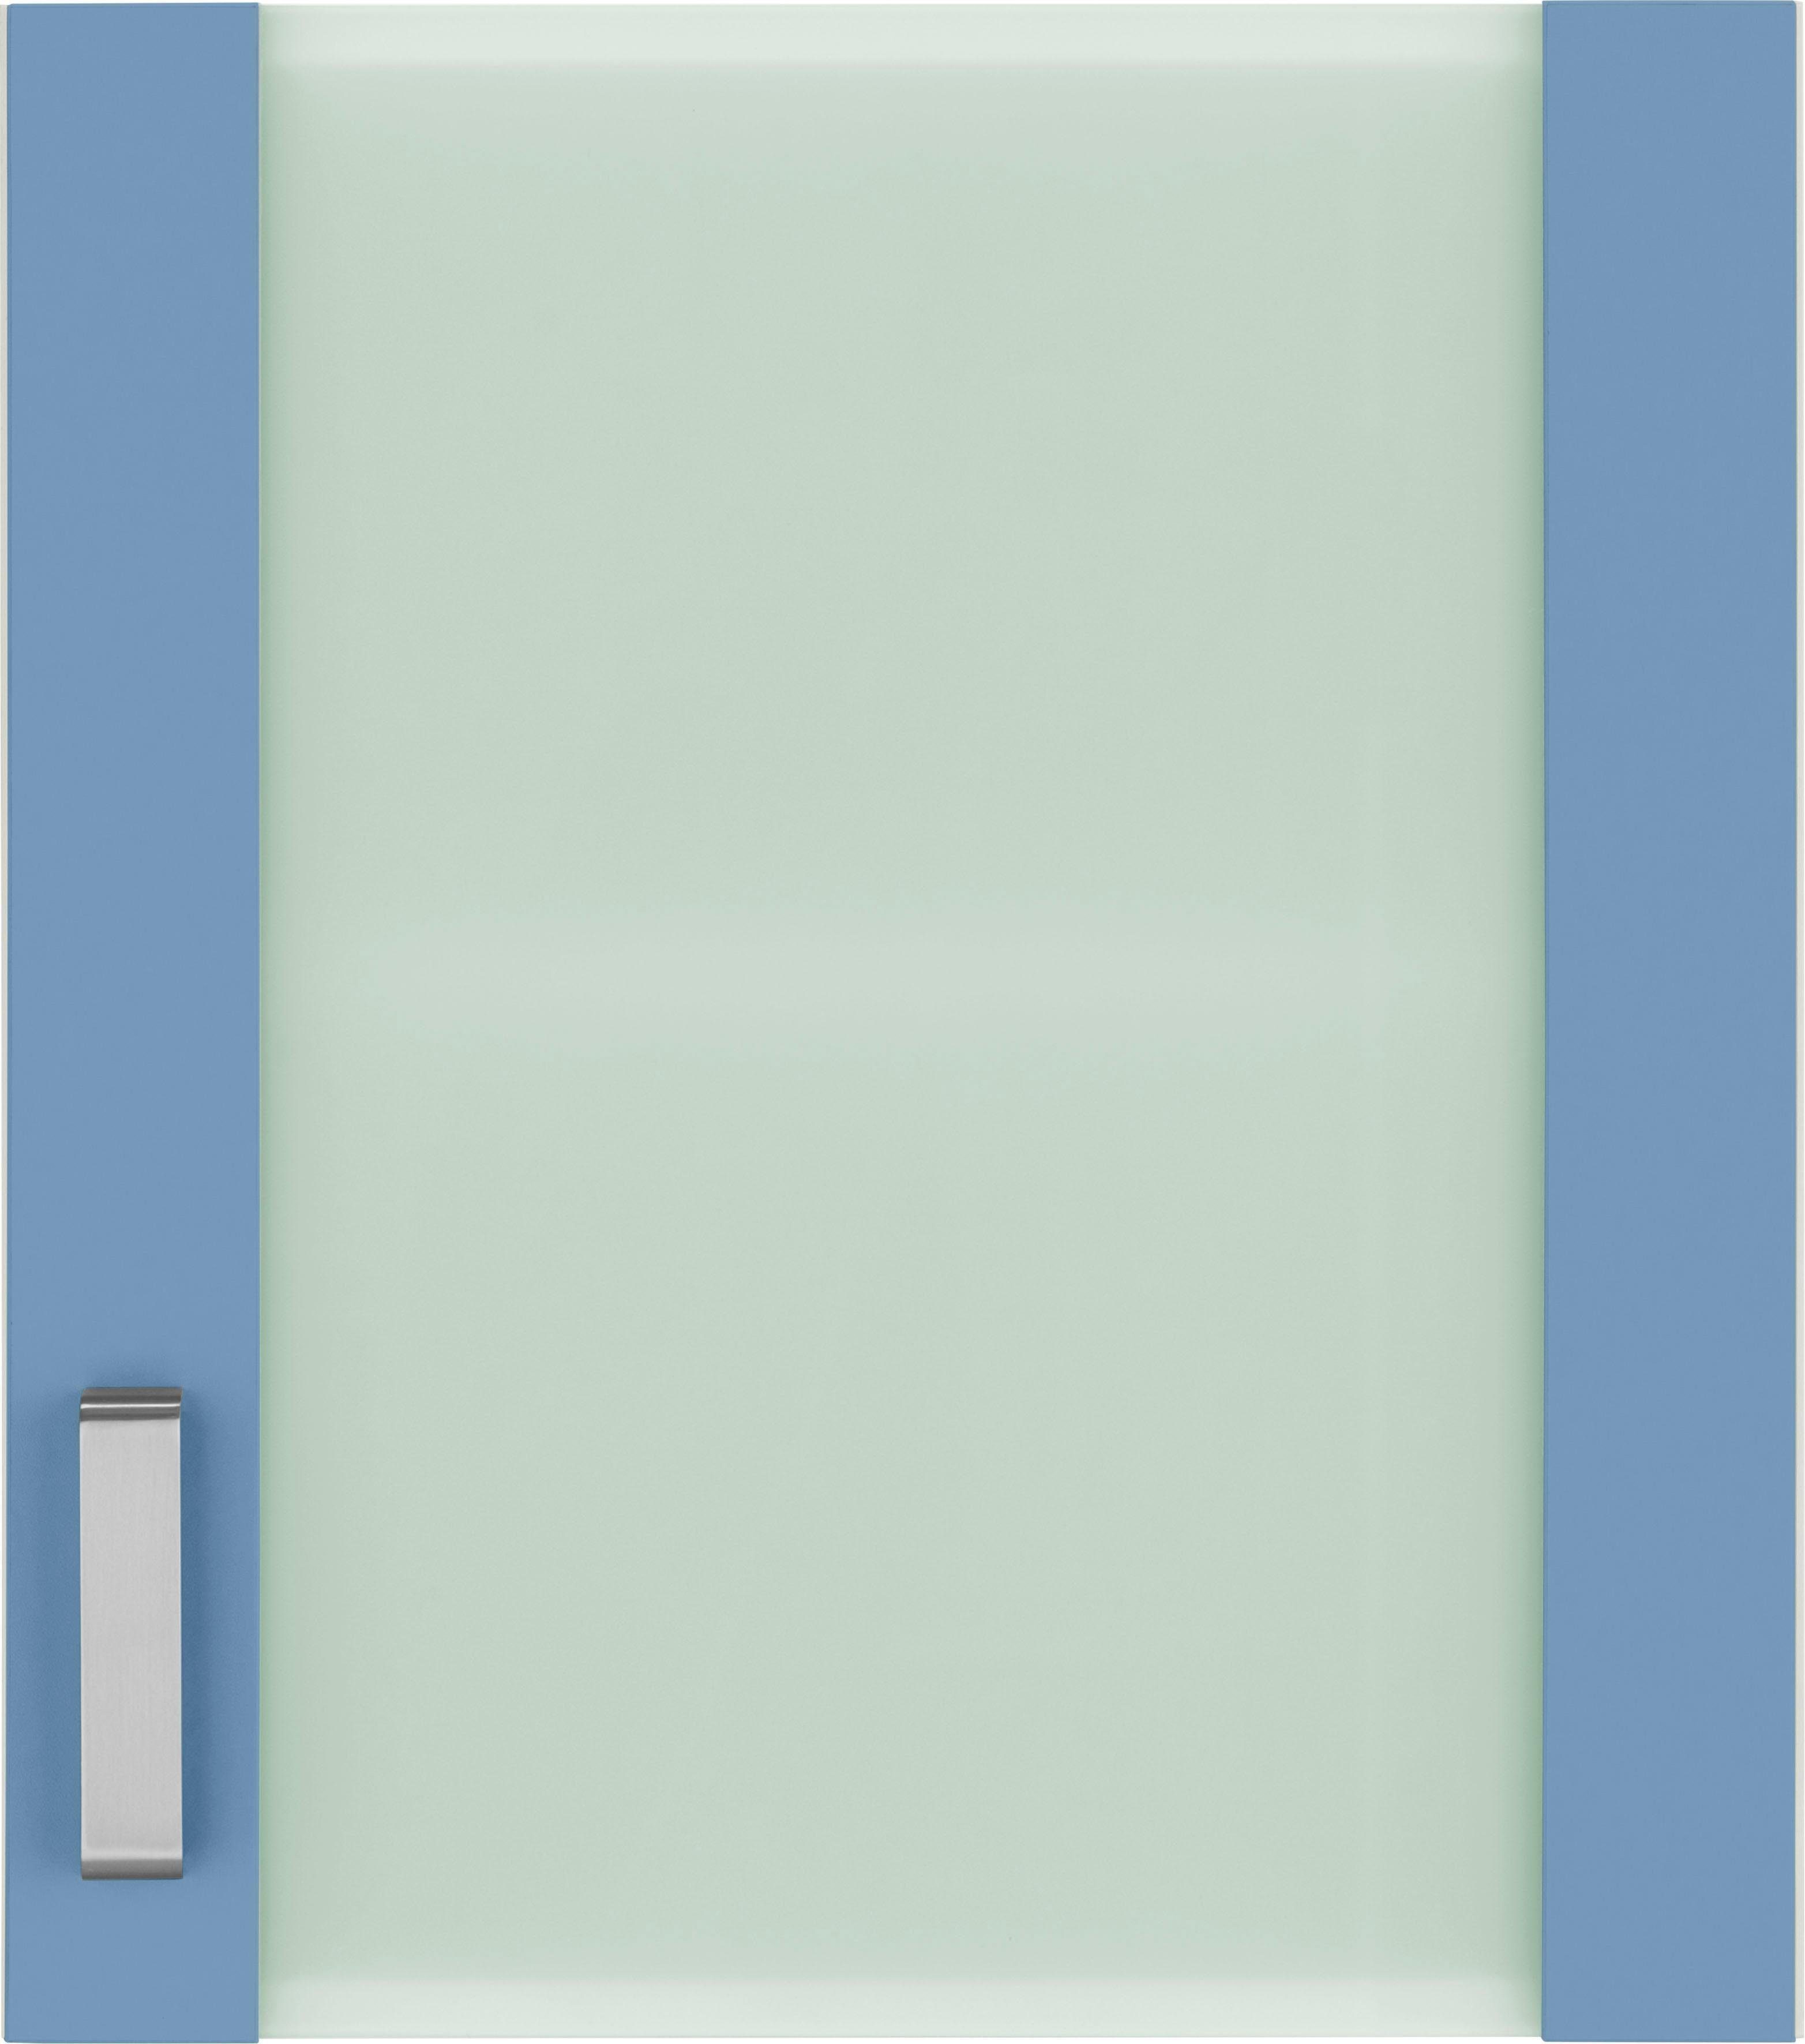 Glashängeschrank Husum mit Glaseinsatz Küchen wiho Front himmelblau/weiß